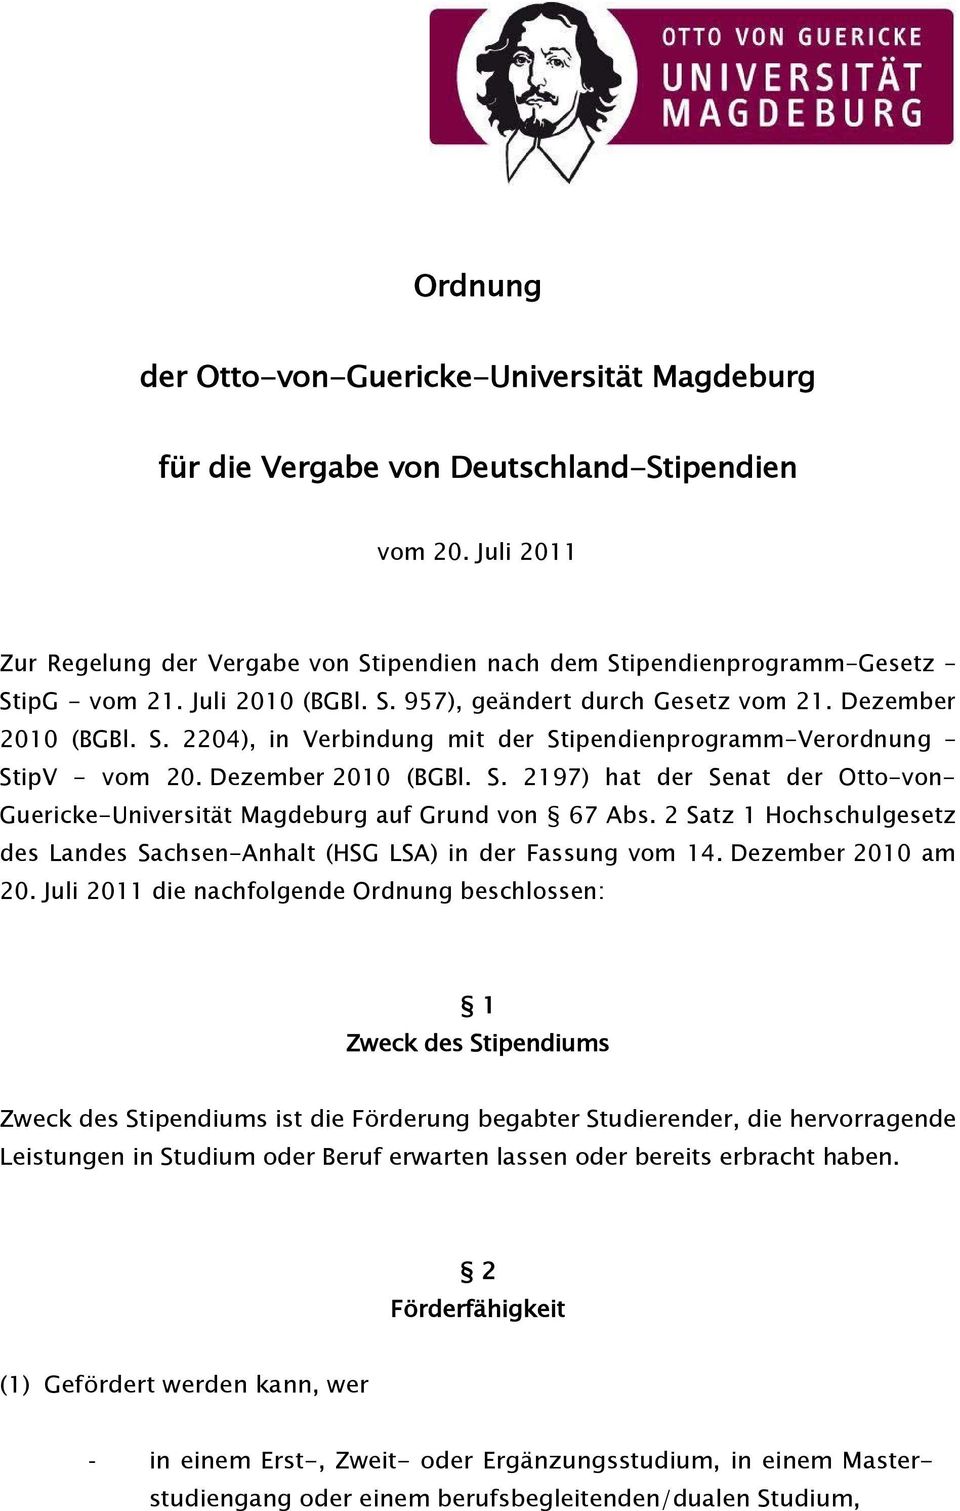 Dezember 2010 (BGBl. S. 2197) hat der Senat der Otto-von- Guericke-Universität Magdeburg auf Grund von 67 Abs. 2 Satz 1 Hochschulgesetz des Landes Sachsen-Anhalt (HSG LSA) in der Fassung vom 14.